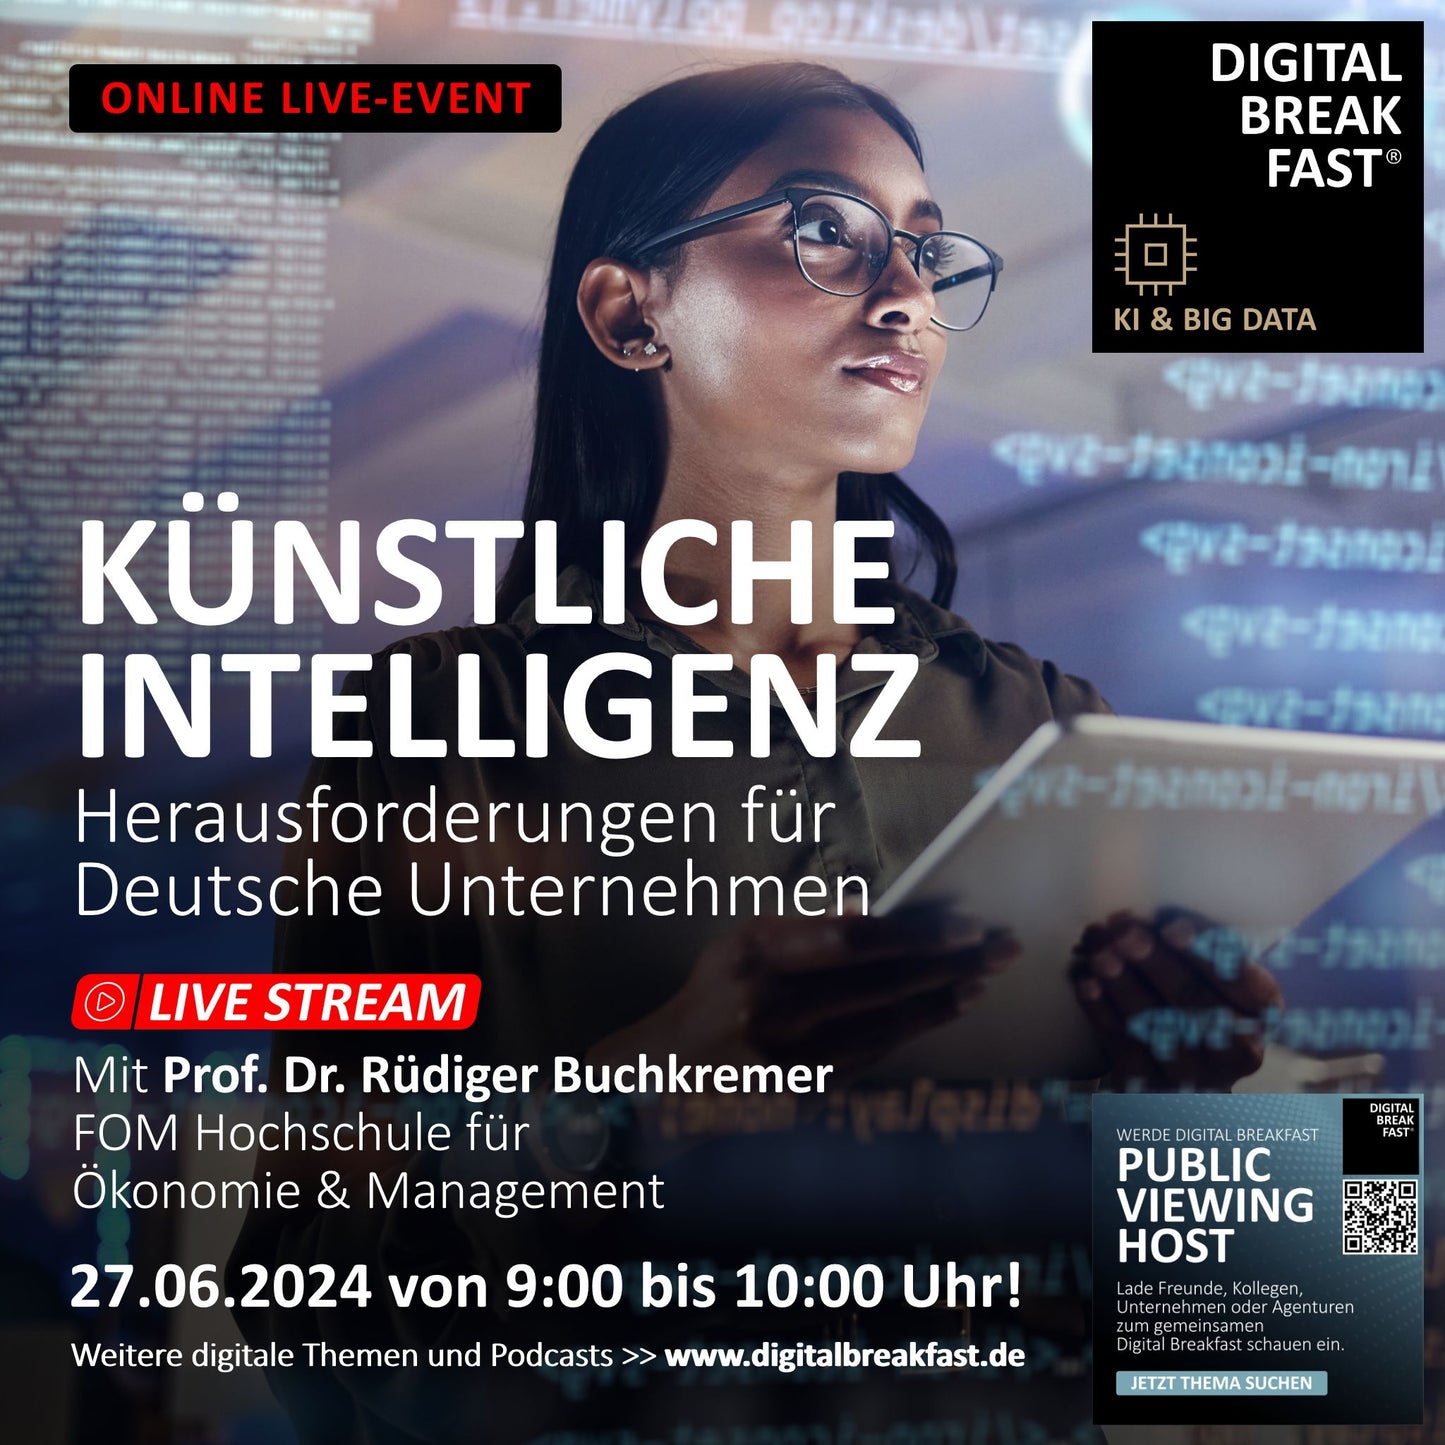 Do, 27.06.2024: "KI: Herausforderungen für Deutsche Unternehmen!" | Prof. Dr. Rüdiger Buchkremer